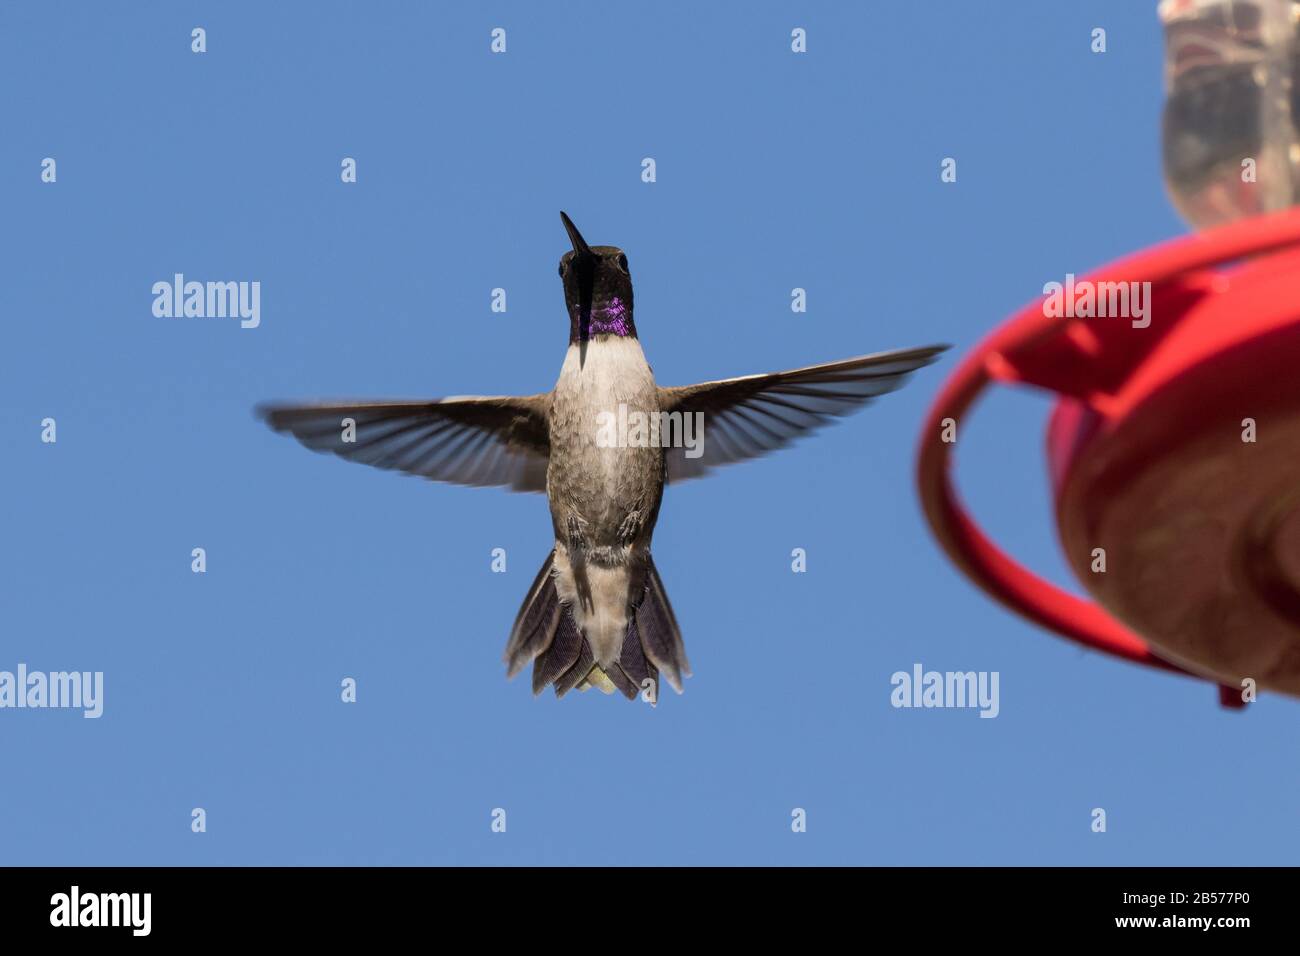 Black-chinned Hummingbird Stock Photo